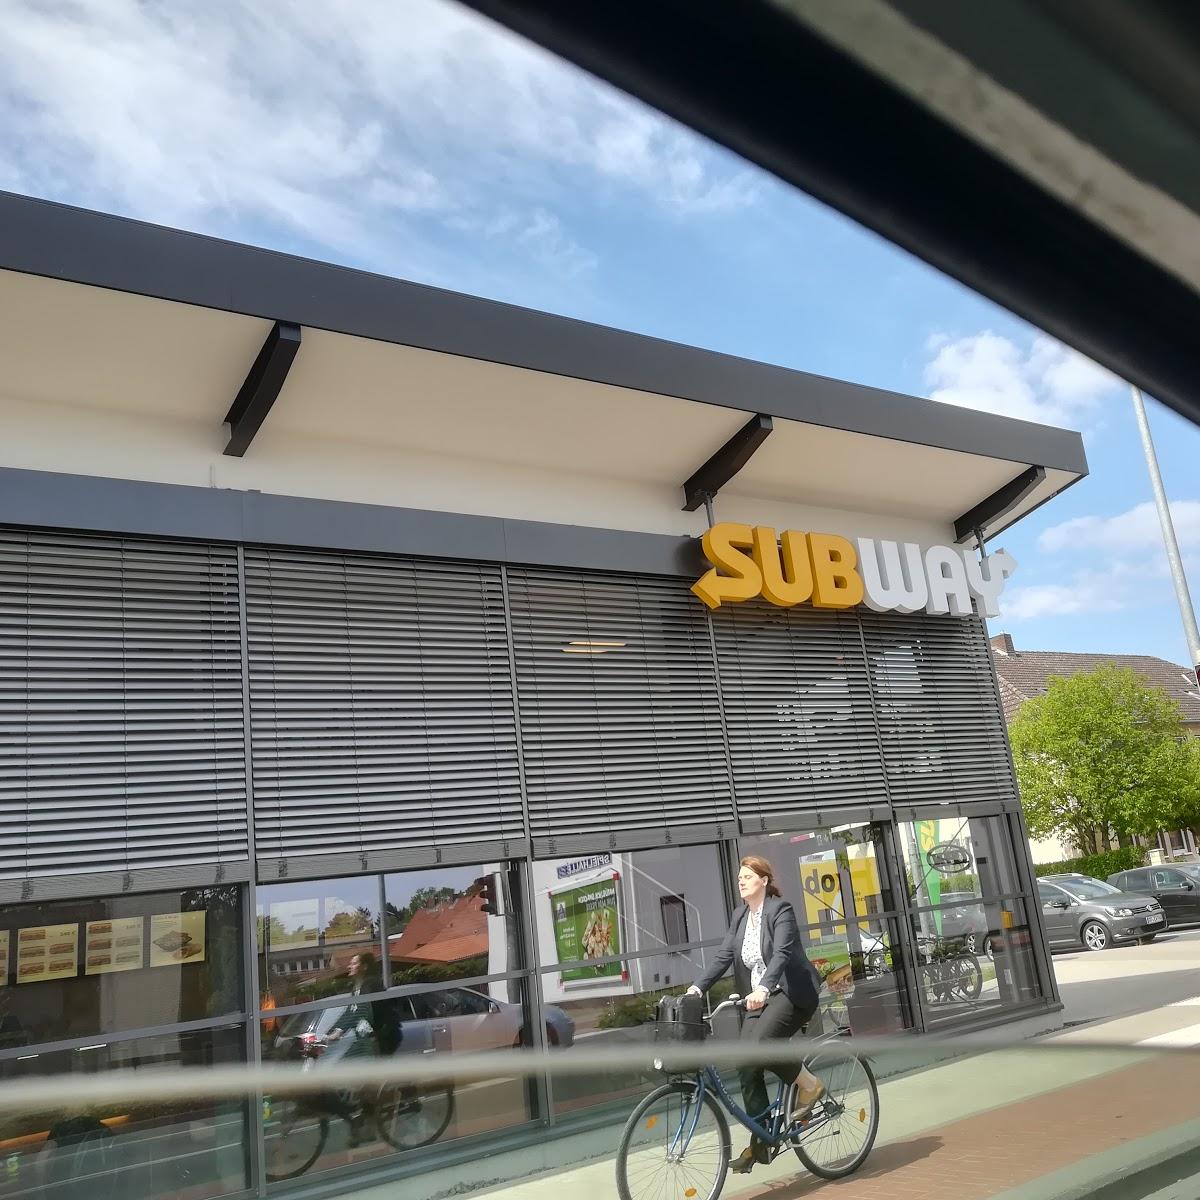 Restaurant "Subway" in Gifhorn